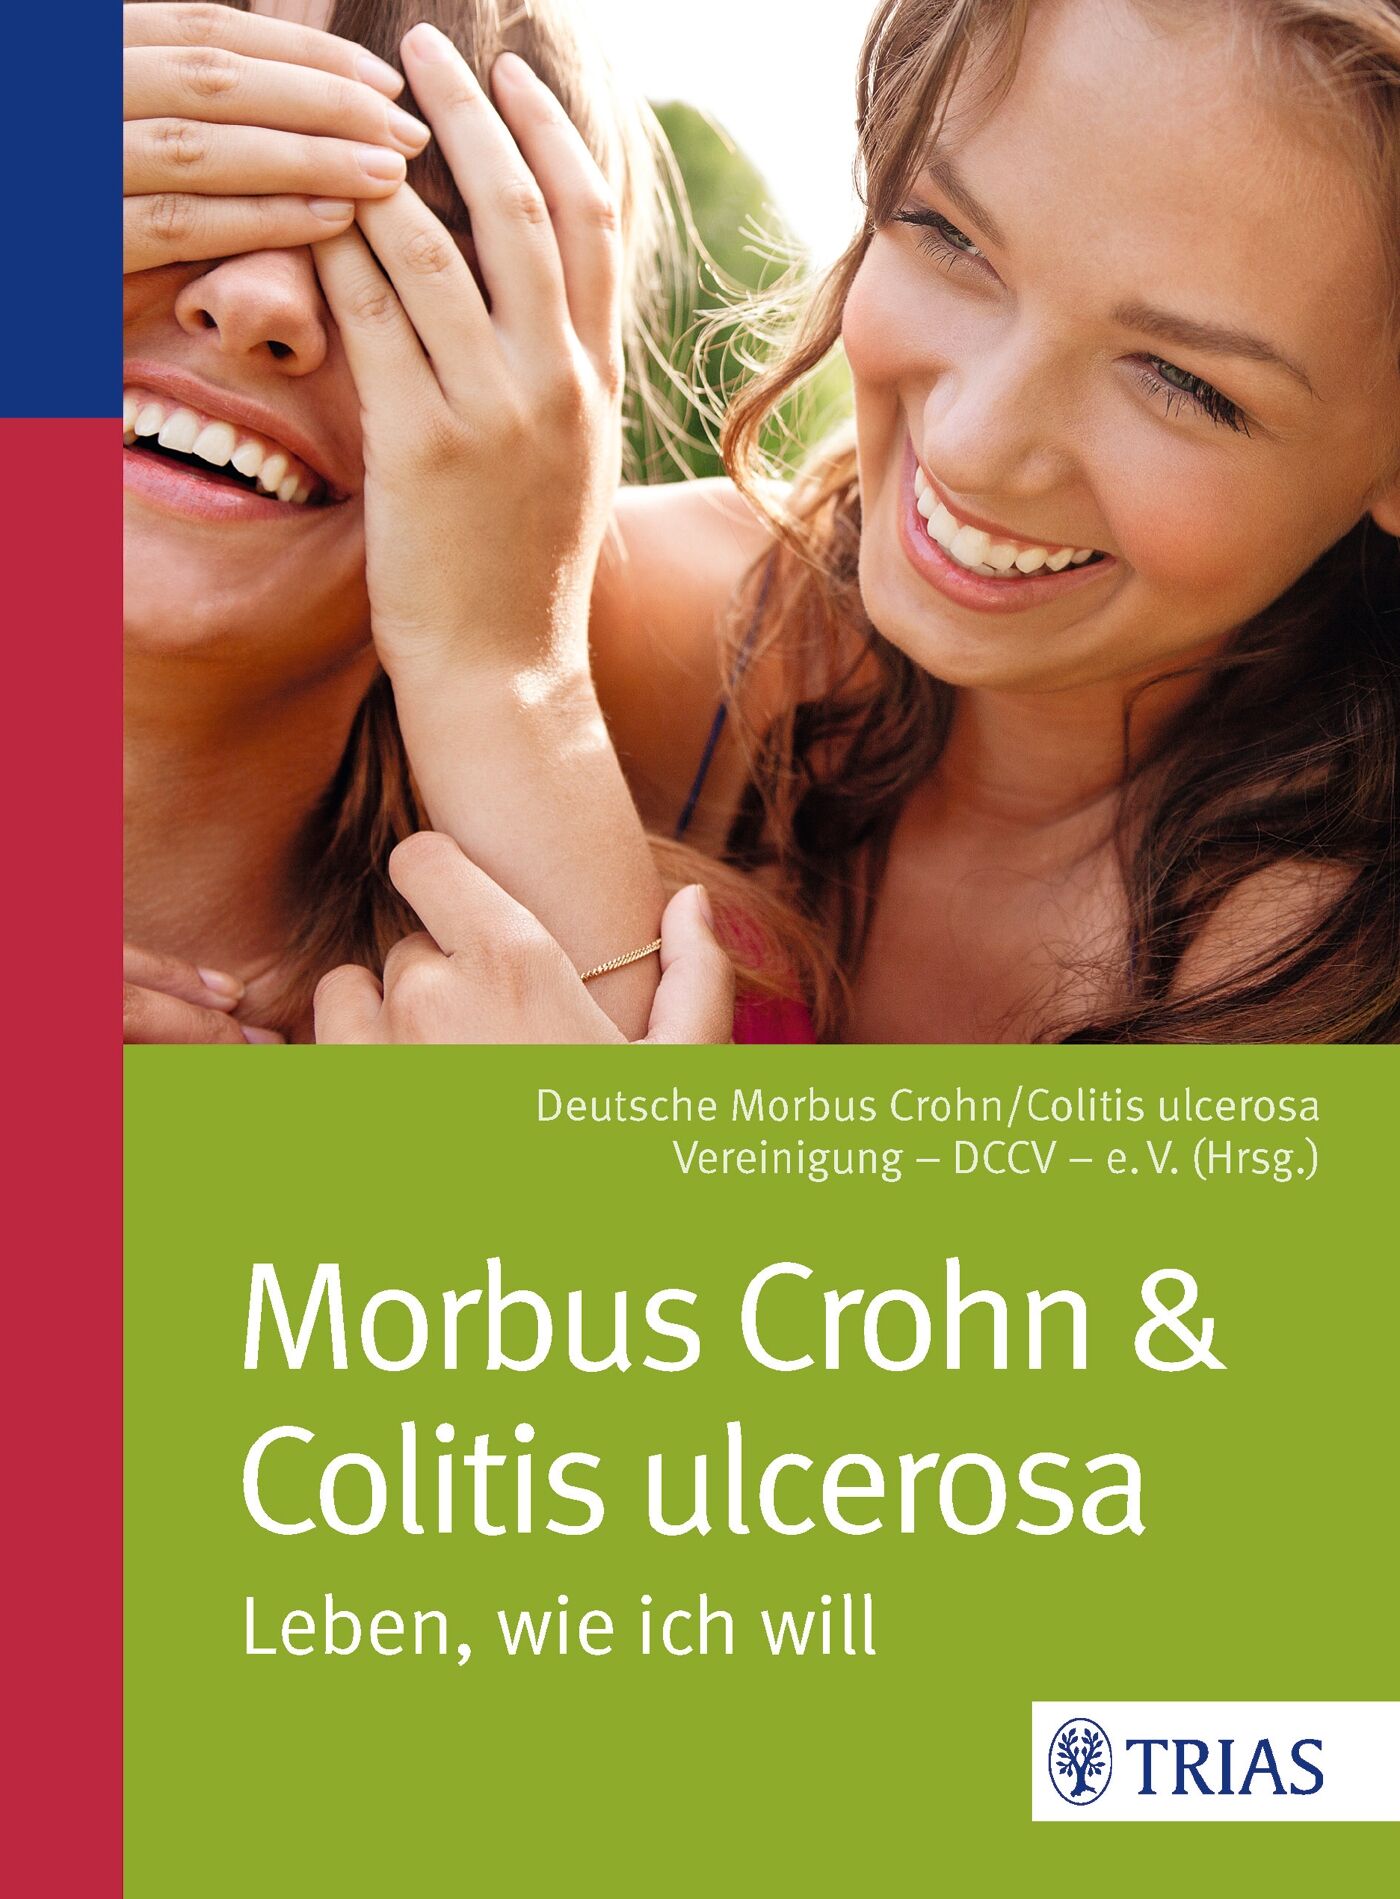 Morbus Crohn & Colitis ulcerosa, 9783830466680